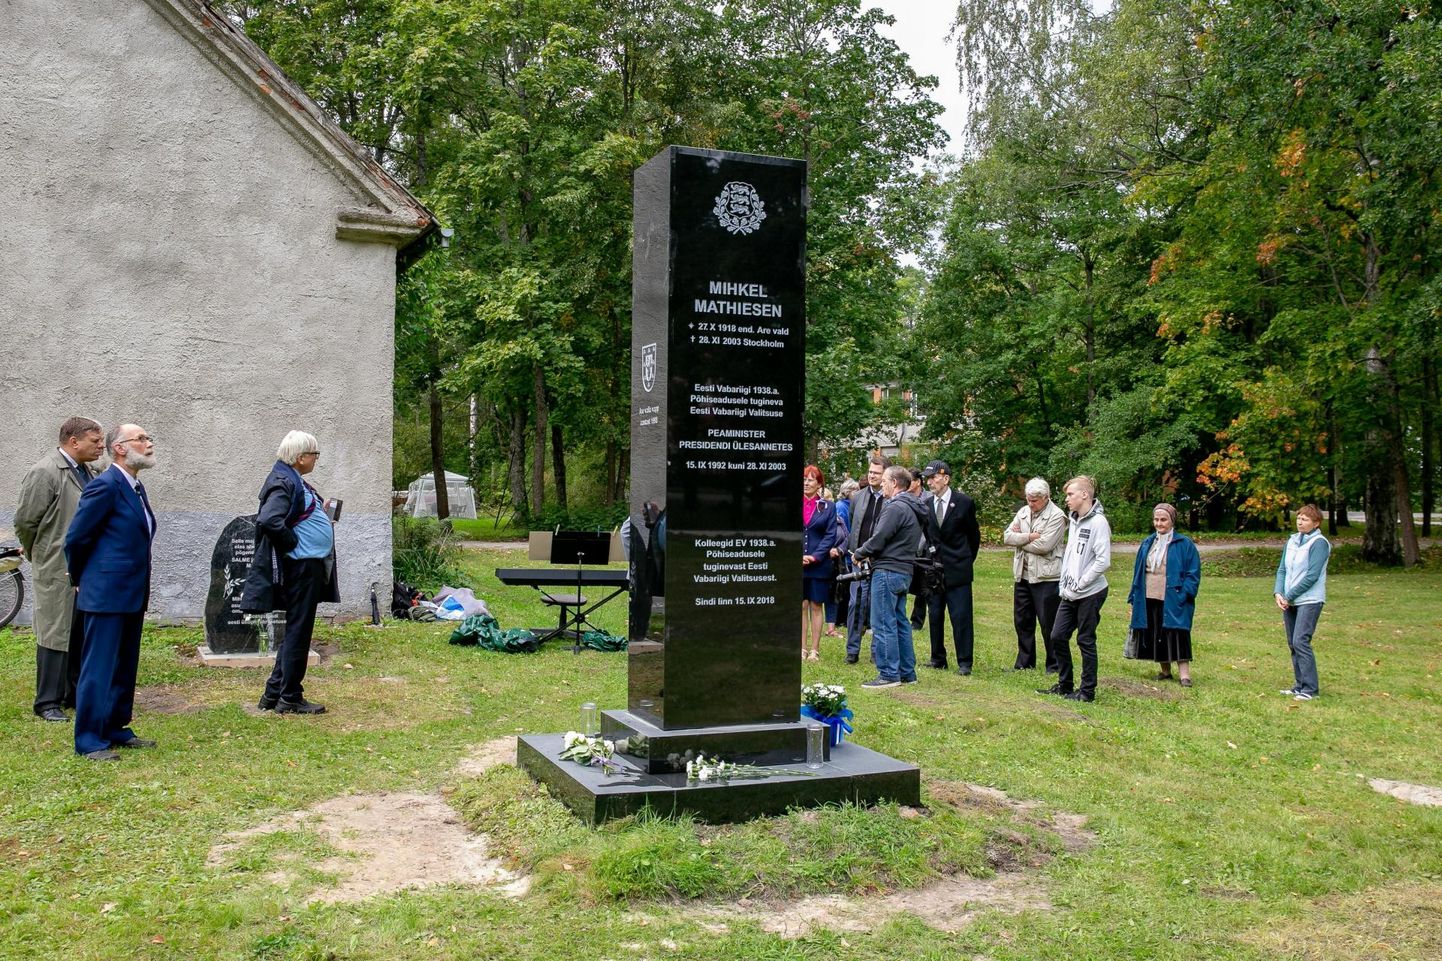 Sindis avati mälestusmärk Eesti eksiilvalitsuse peaministrile Mihkel Mathiesenile.